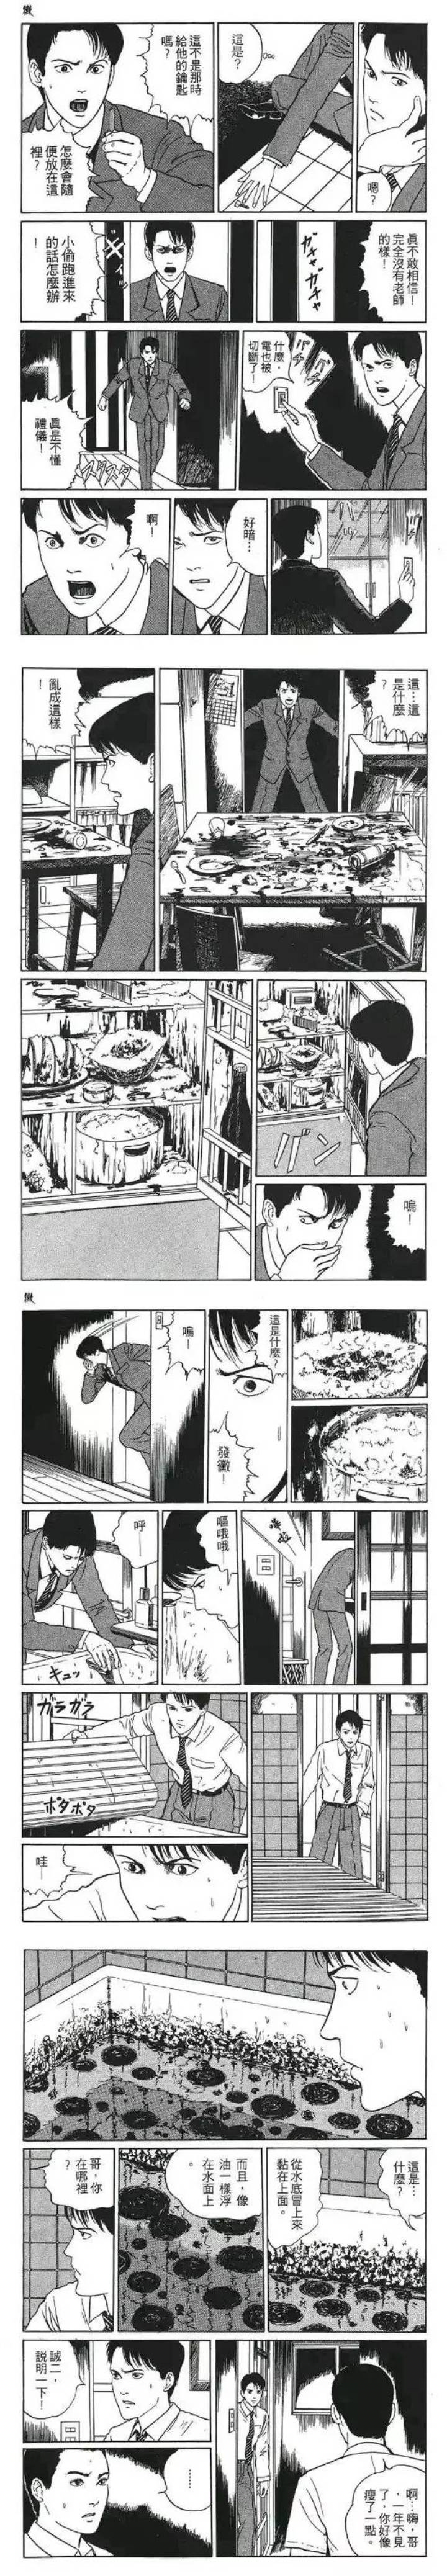 伊藤润二系列《黴》（霉），细小生物的侵入-黑白漫话